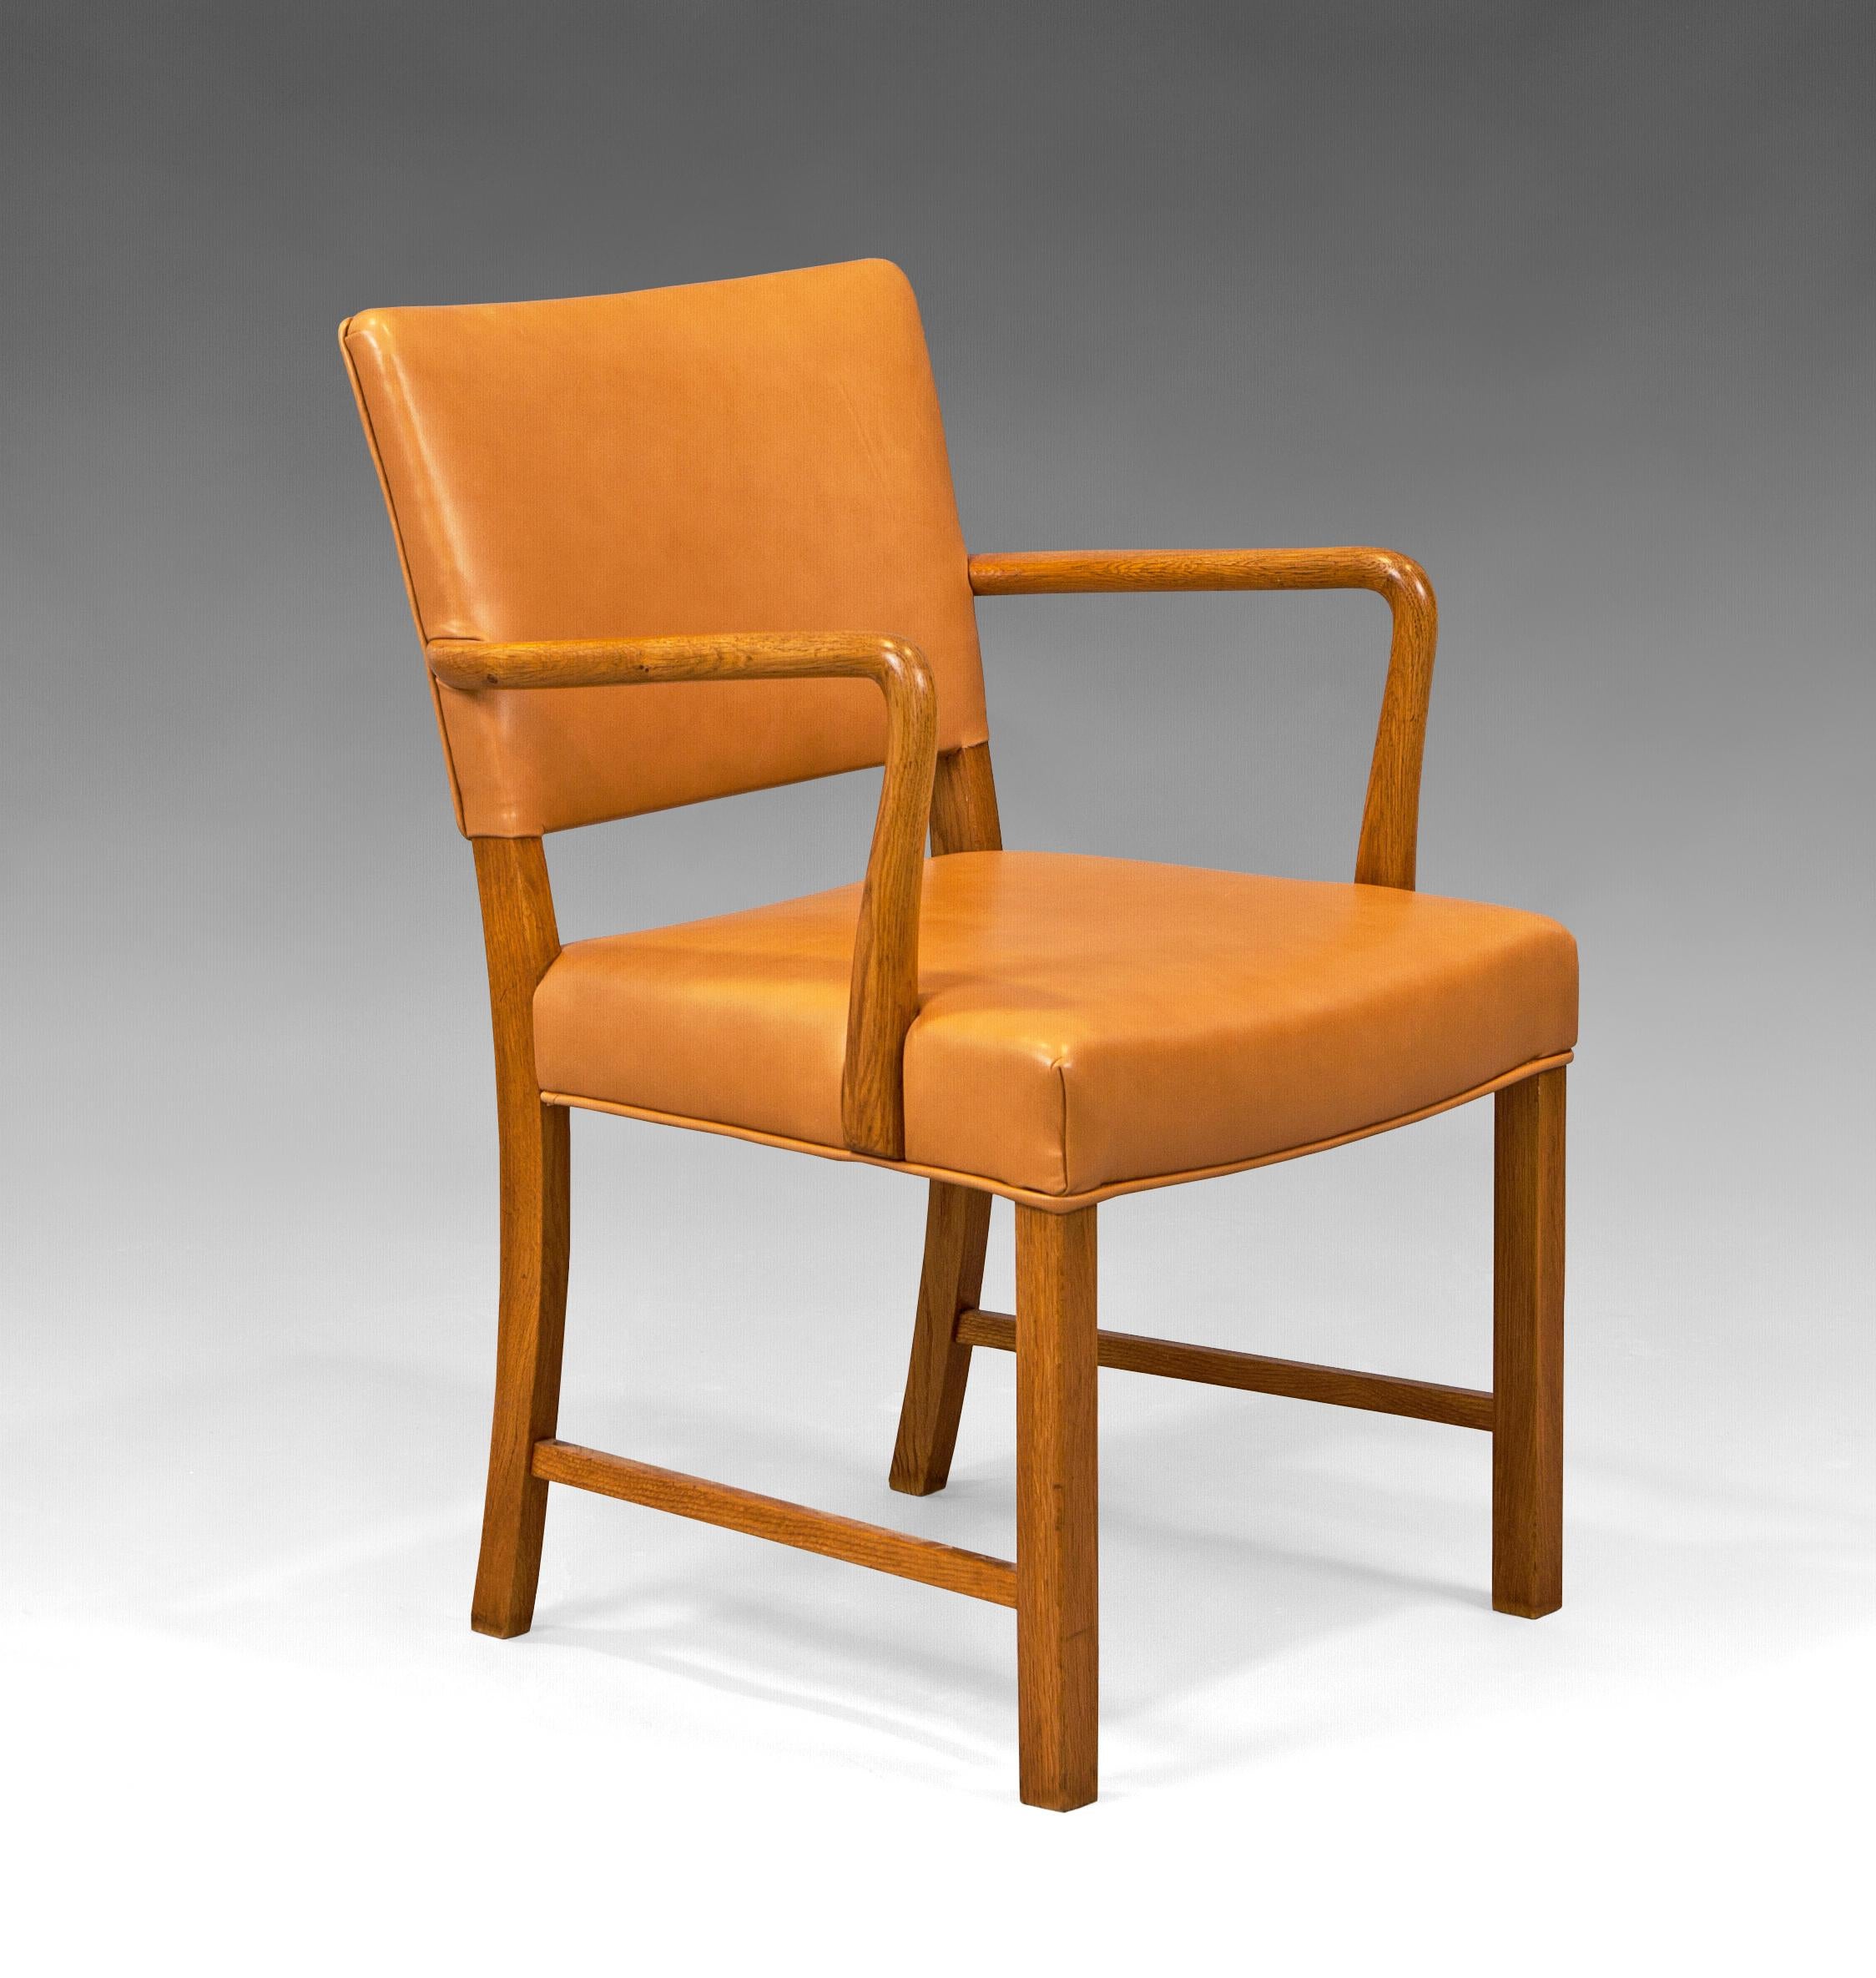 Chaise en chêne et cuir de Karee Klint (attribuée) pour I.C.A. Jensen. Danemark, années 1930.
Excellent état restauré et rechampi en cuir.

 